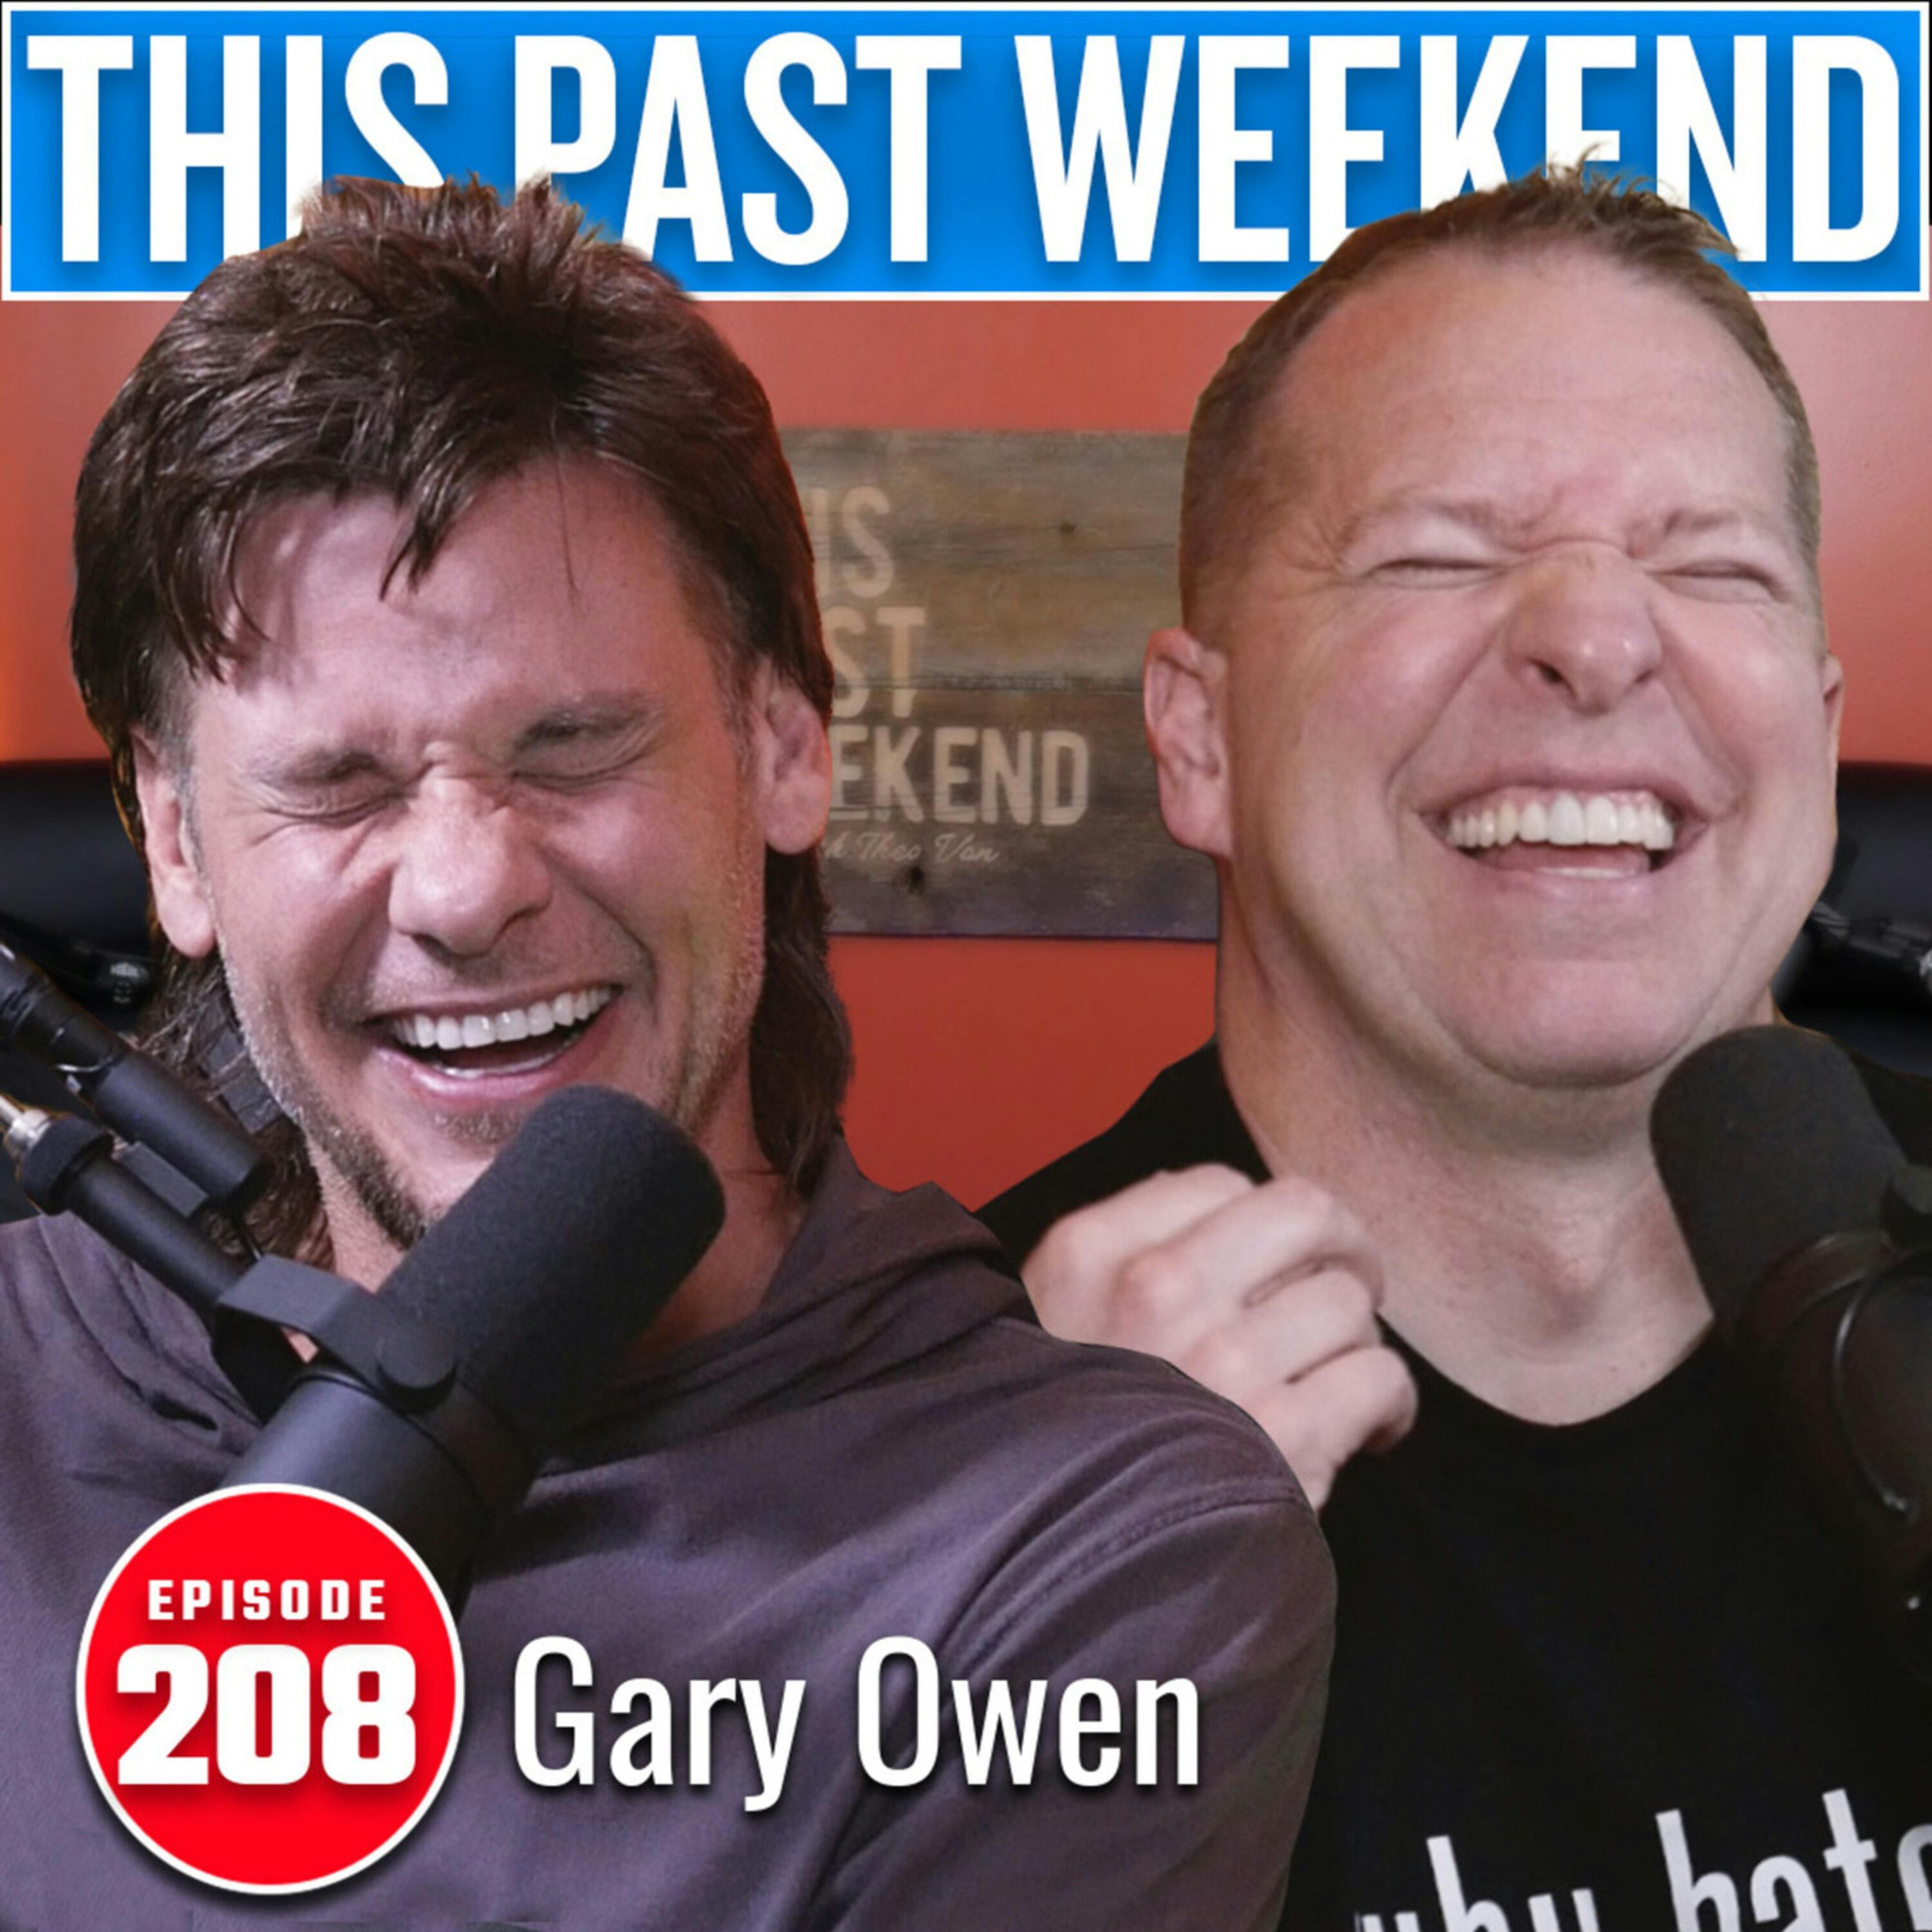 Gary Owen | This Past Weekend #208 by Theo Von